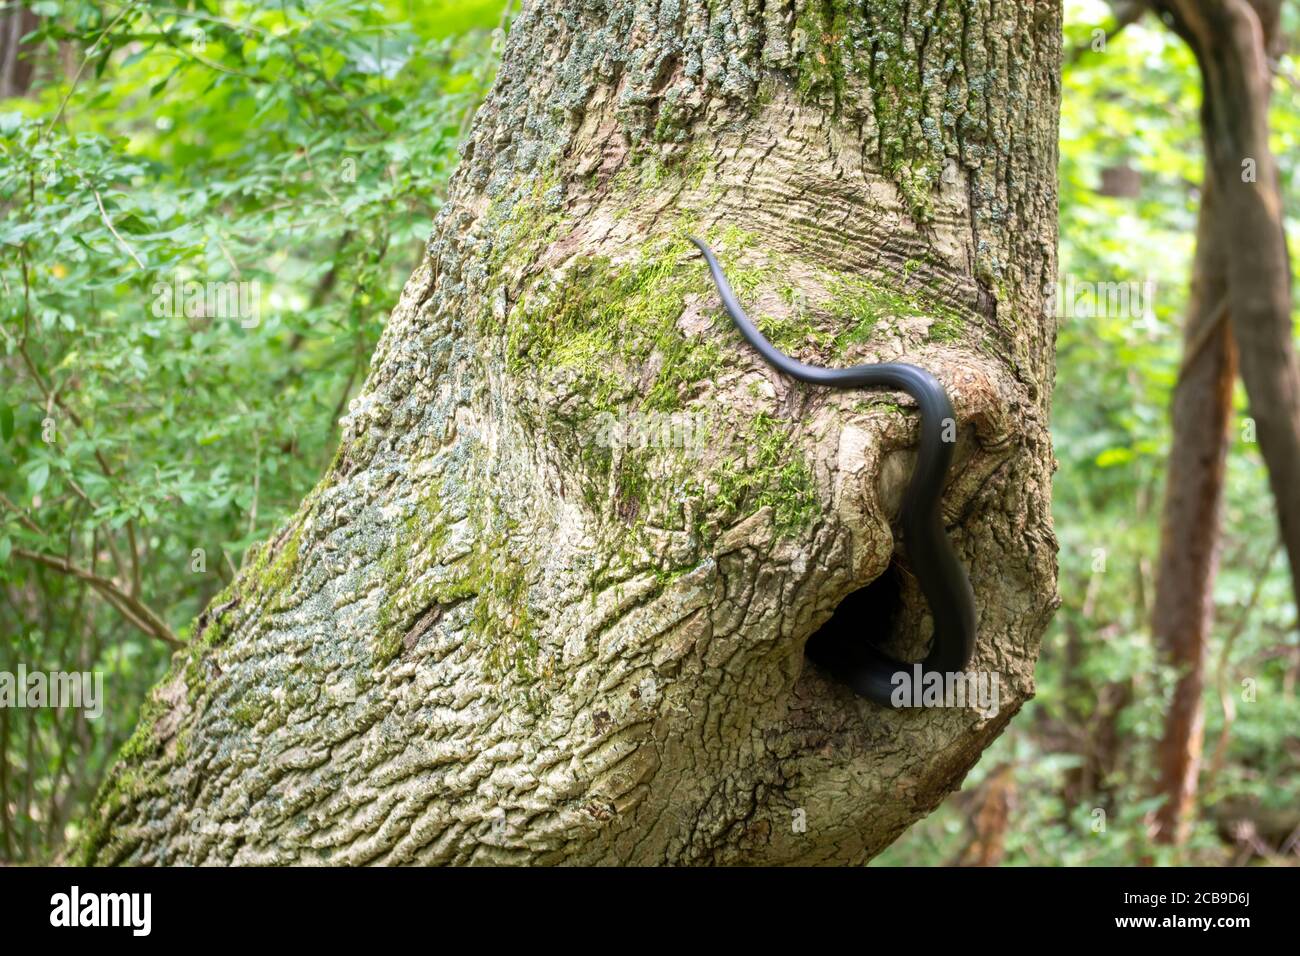 Imagen completa de una serpiente de rata negra del este madura desapareciendo en su casa de árbol hueco. Fondo de bosque verde y textura de corteza rugosa con copia Foto de stock